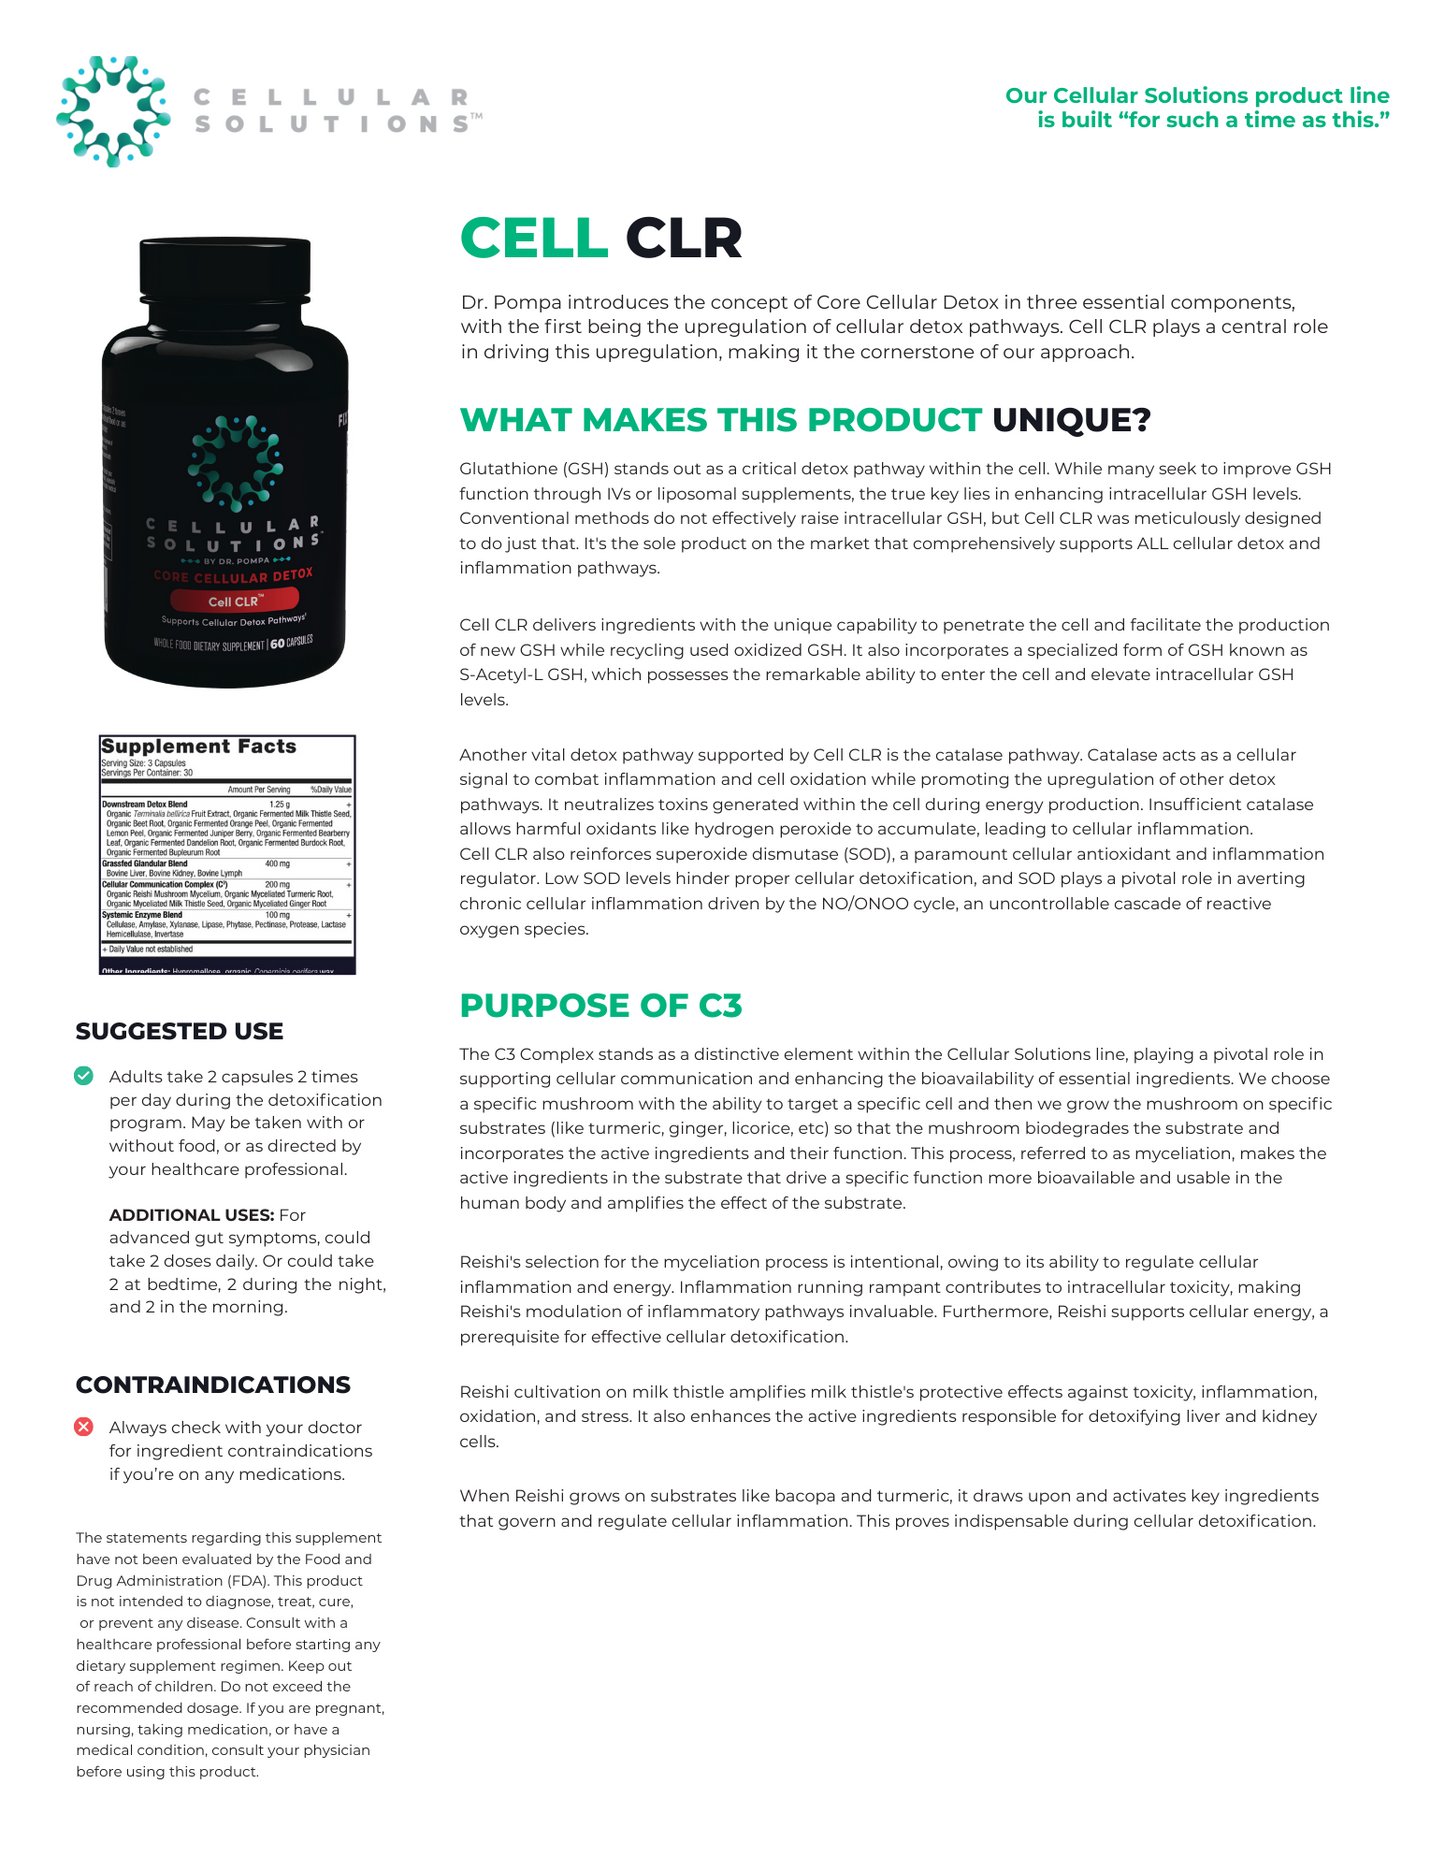 Cell CLR